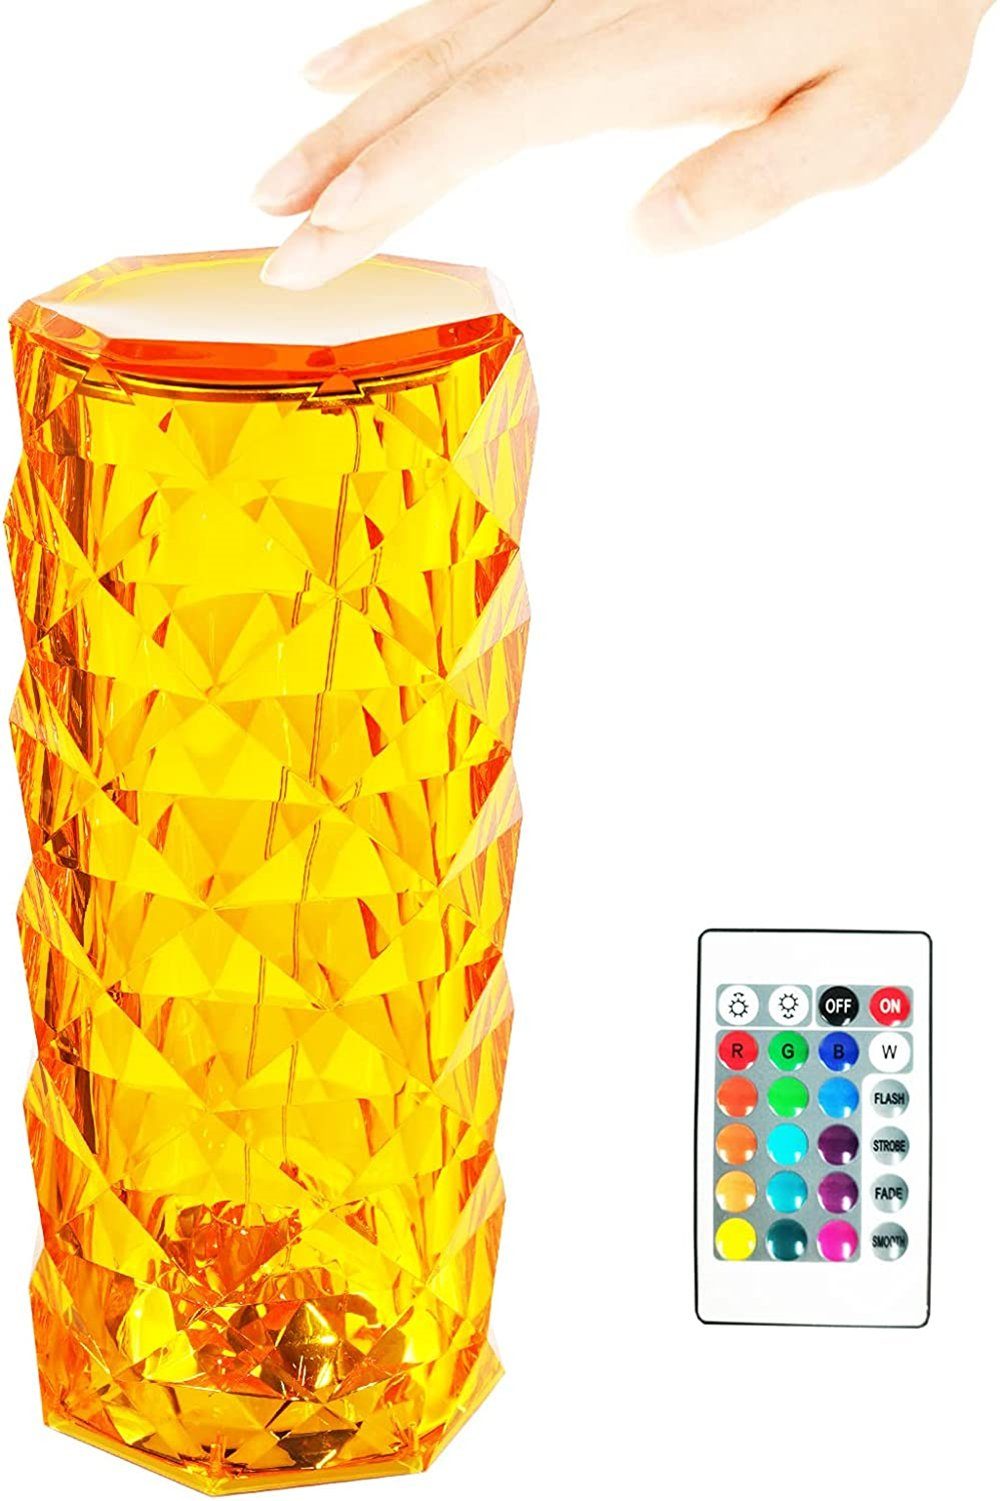 integriert, orange Nachttischlampe 16 Lila-Rot, & Lampe,Touch-Control-Nachttischlampe Kristall Diamant 6 Türkis, LED Nachttischlampe autolock mit Lichtfarbe,warmes usw., Bernstein, fest Gelb, USB-Anschluss, Blau Helligkeitsstufen 16-Farben-Touch-Licht